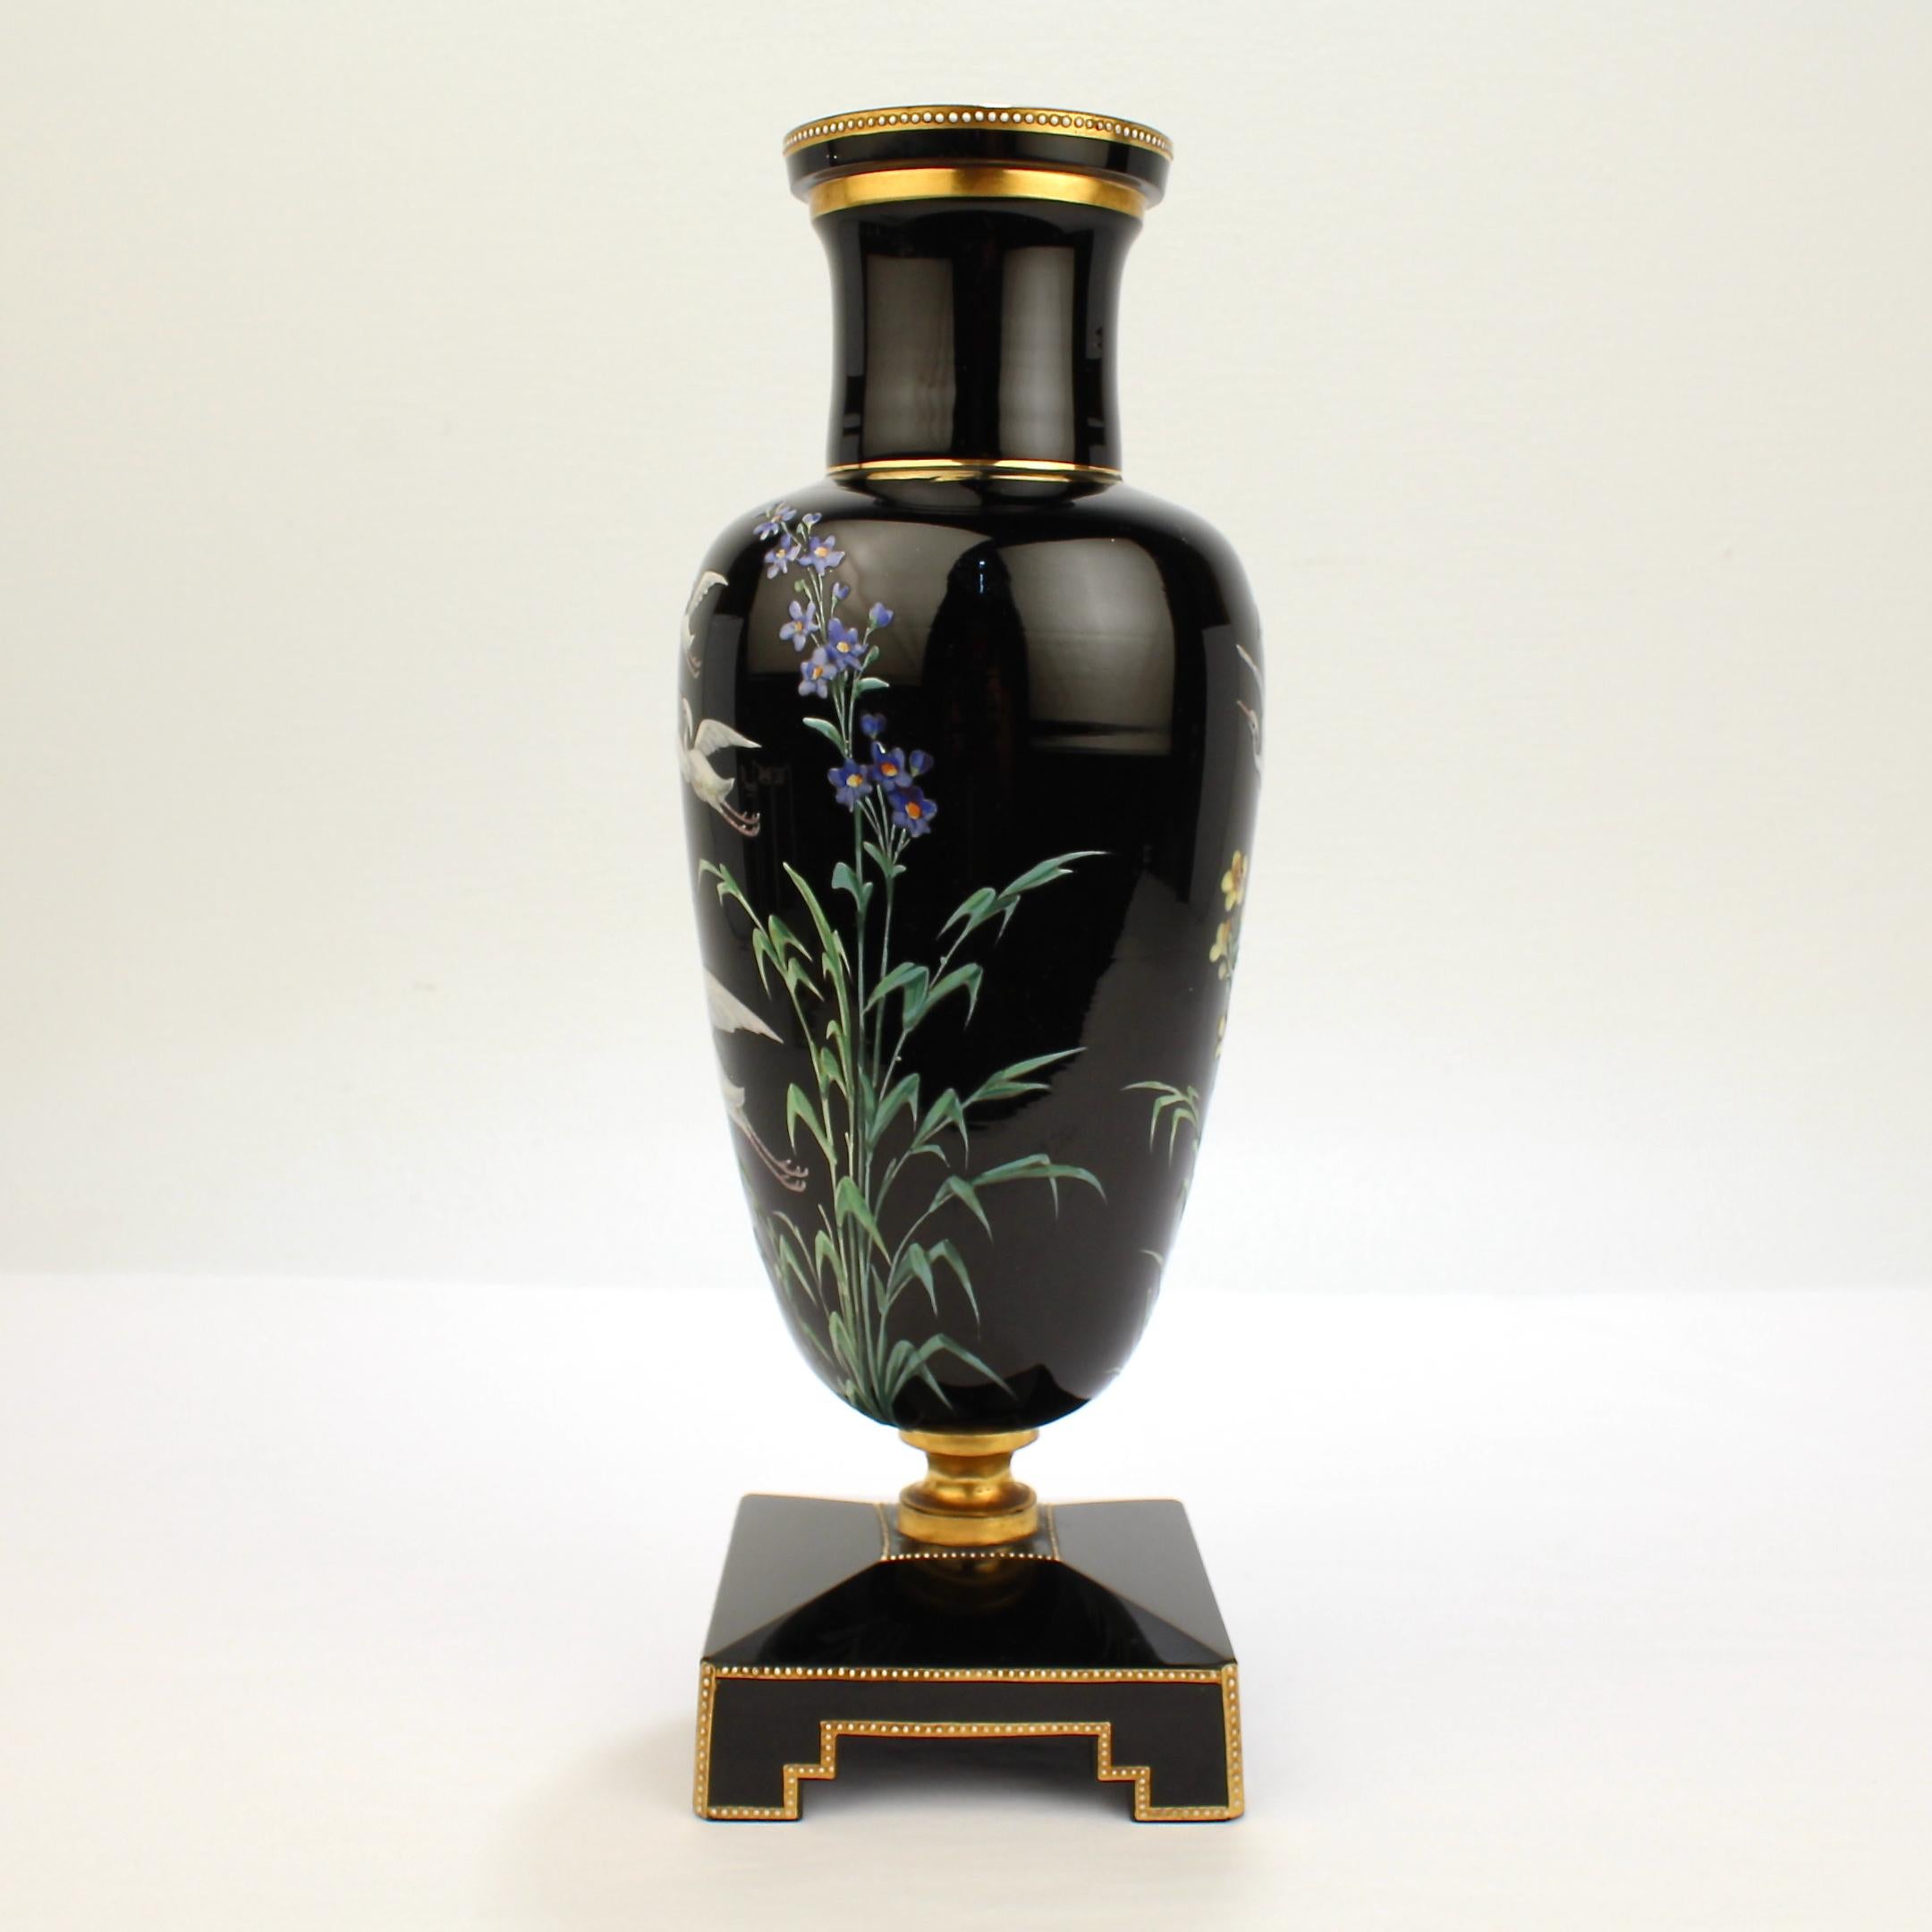 Un merveilleux vase d'art victorien en verre noir améthyste.

Superbe vase de style Moser de Bohème avec une base en escalier et un corps vasiforme. 

Le corps est décoré de hérons ou de cigognes en vol émaillés peints à la main et de diverses